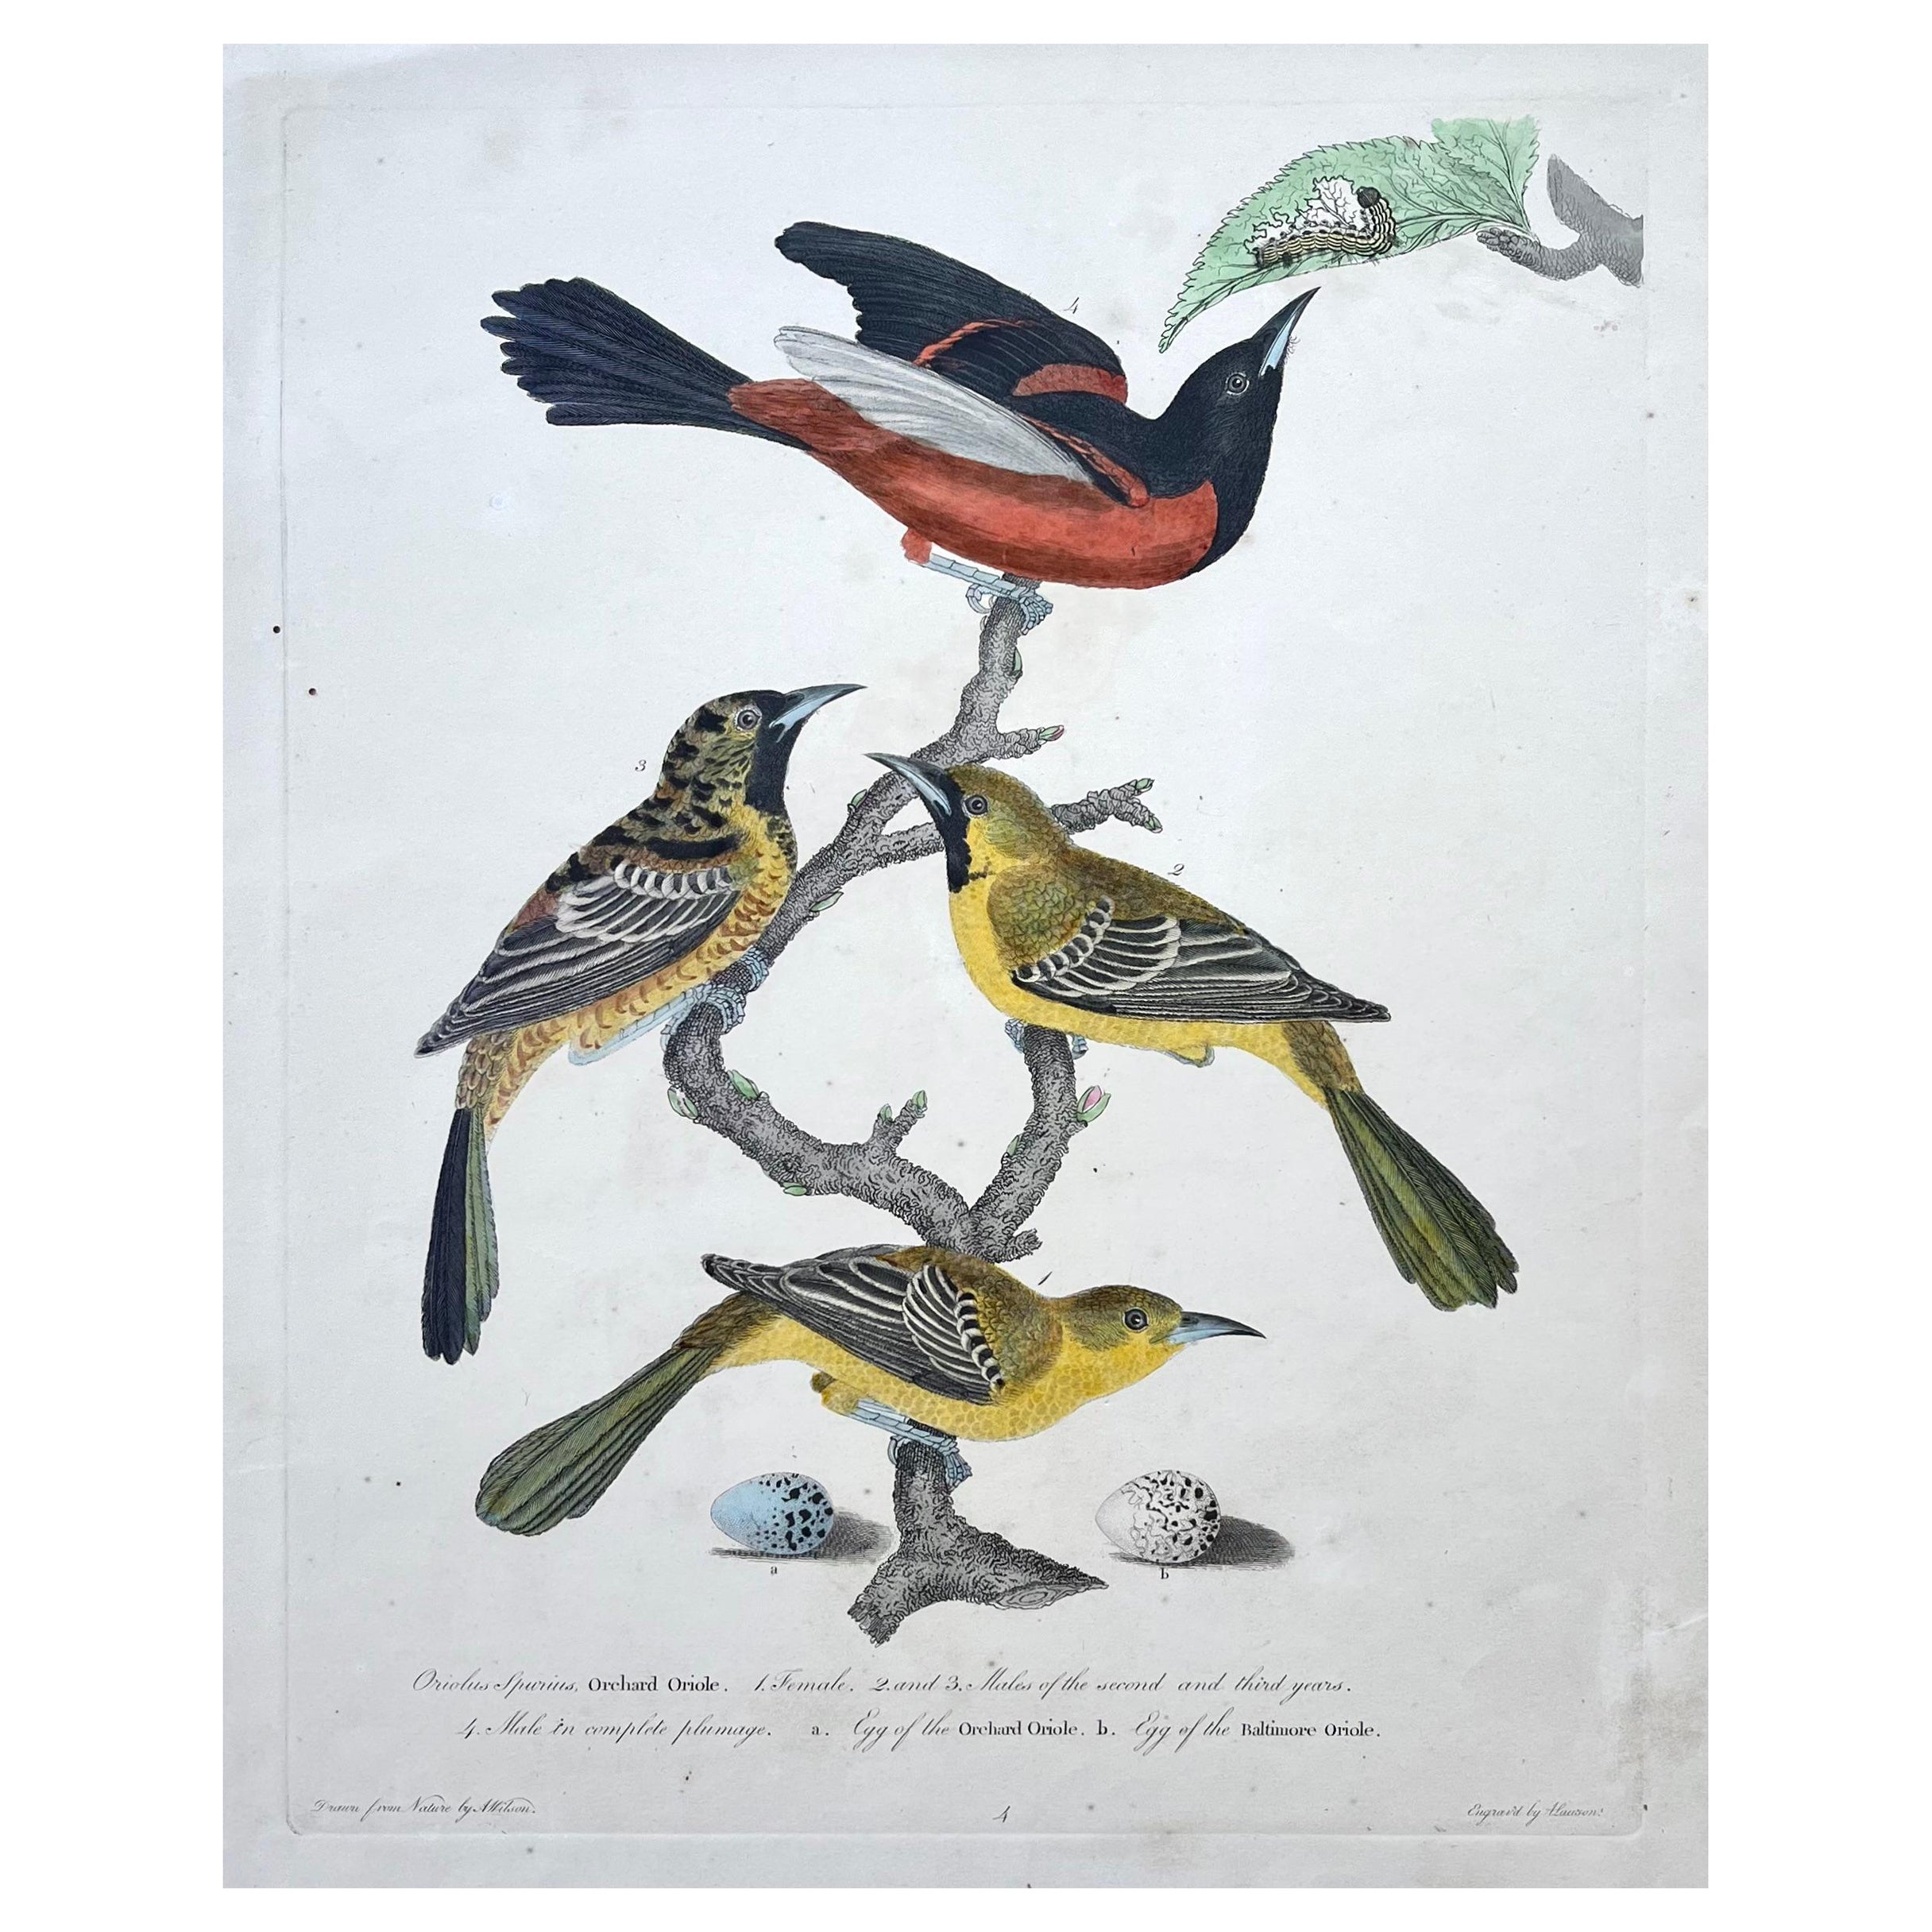 Gravure du début du XIXe siècle représentant des loriots, réalisée par Alexander Wilson, spécialiste de l'ornithologie américaine